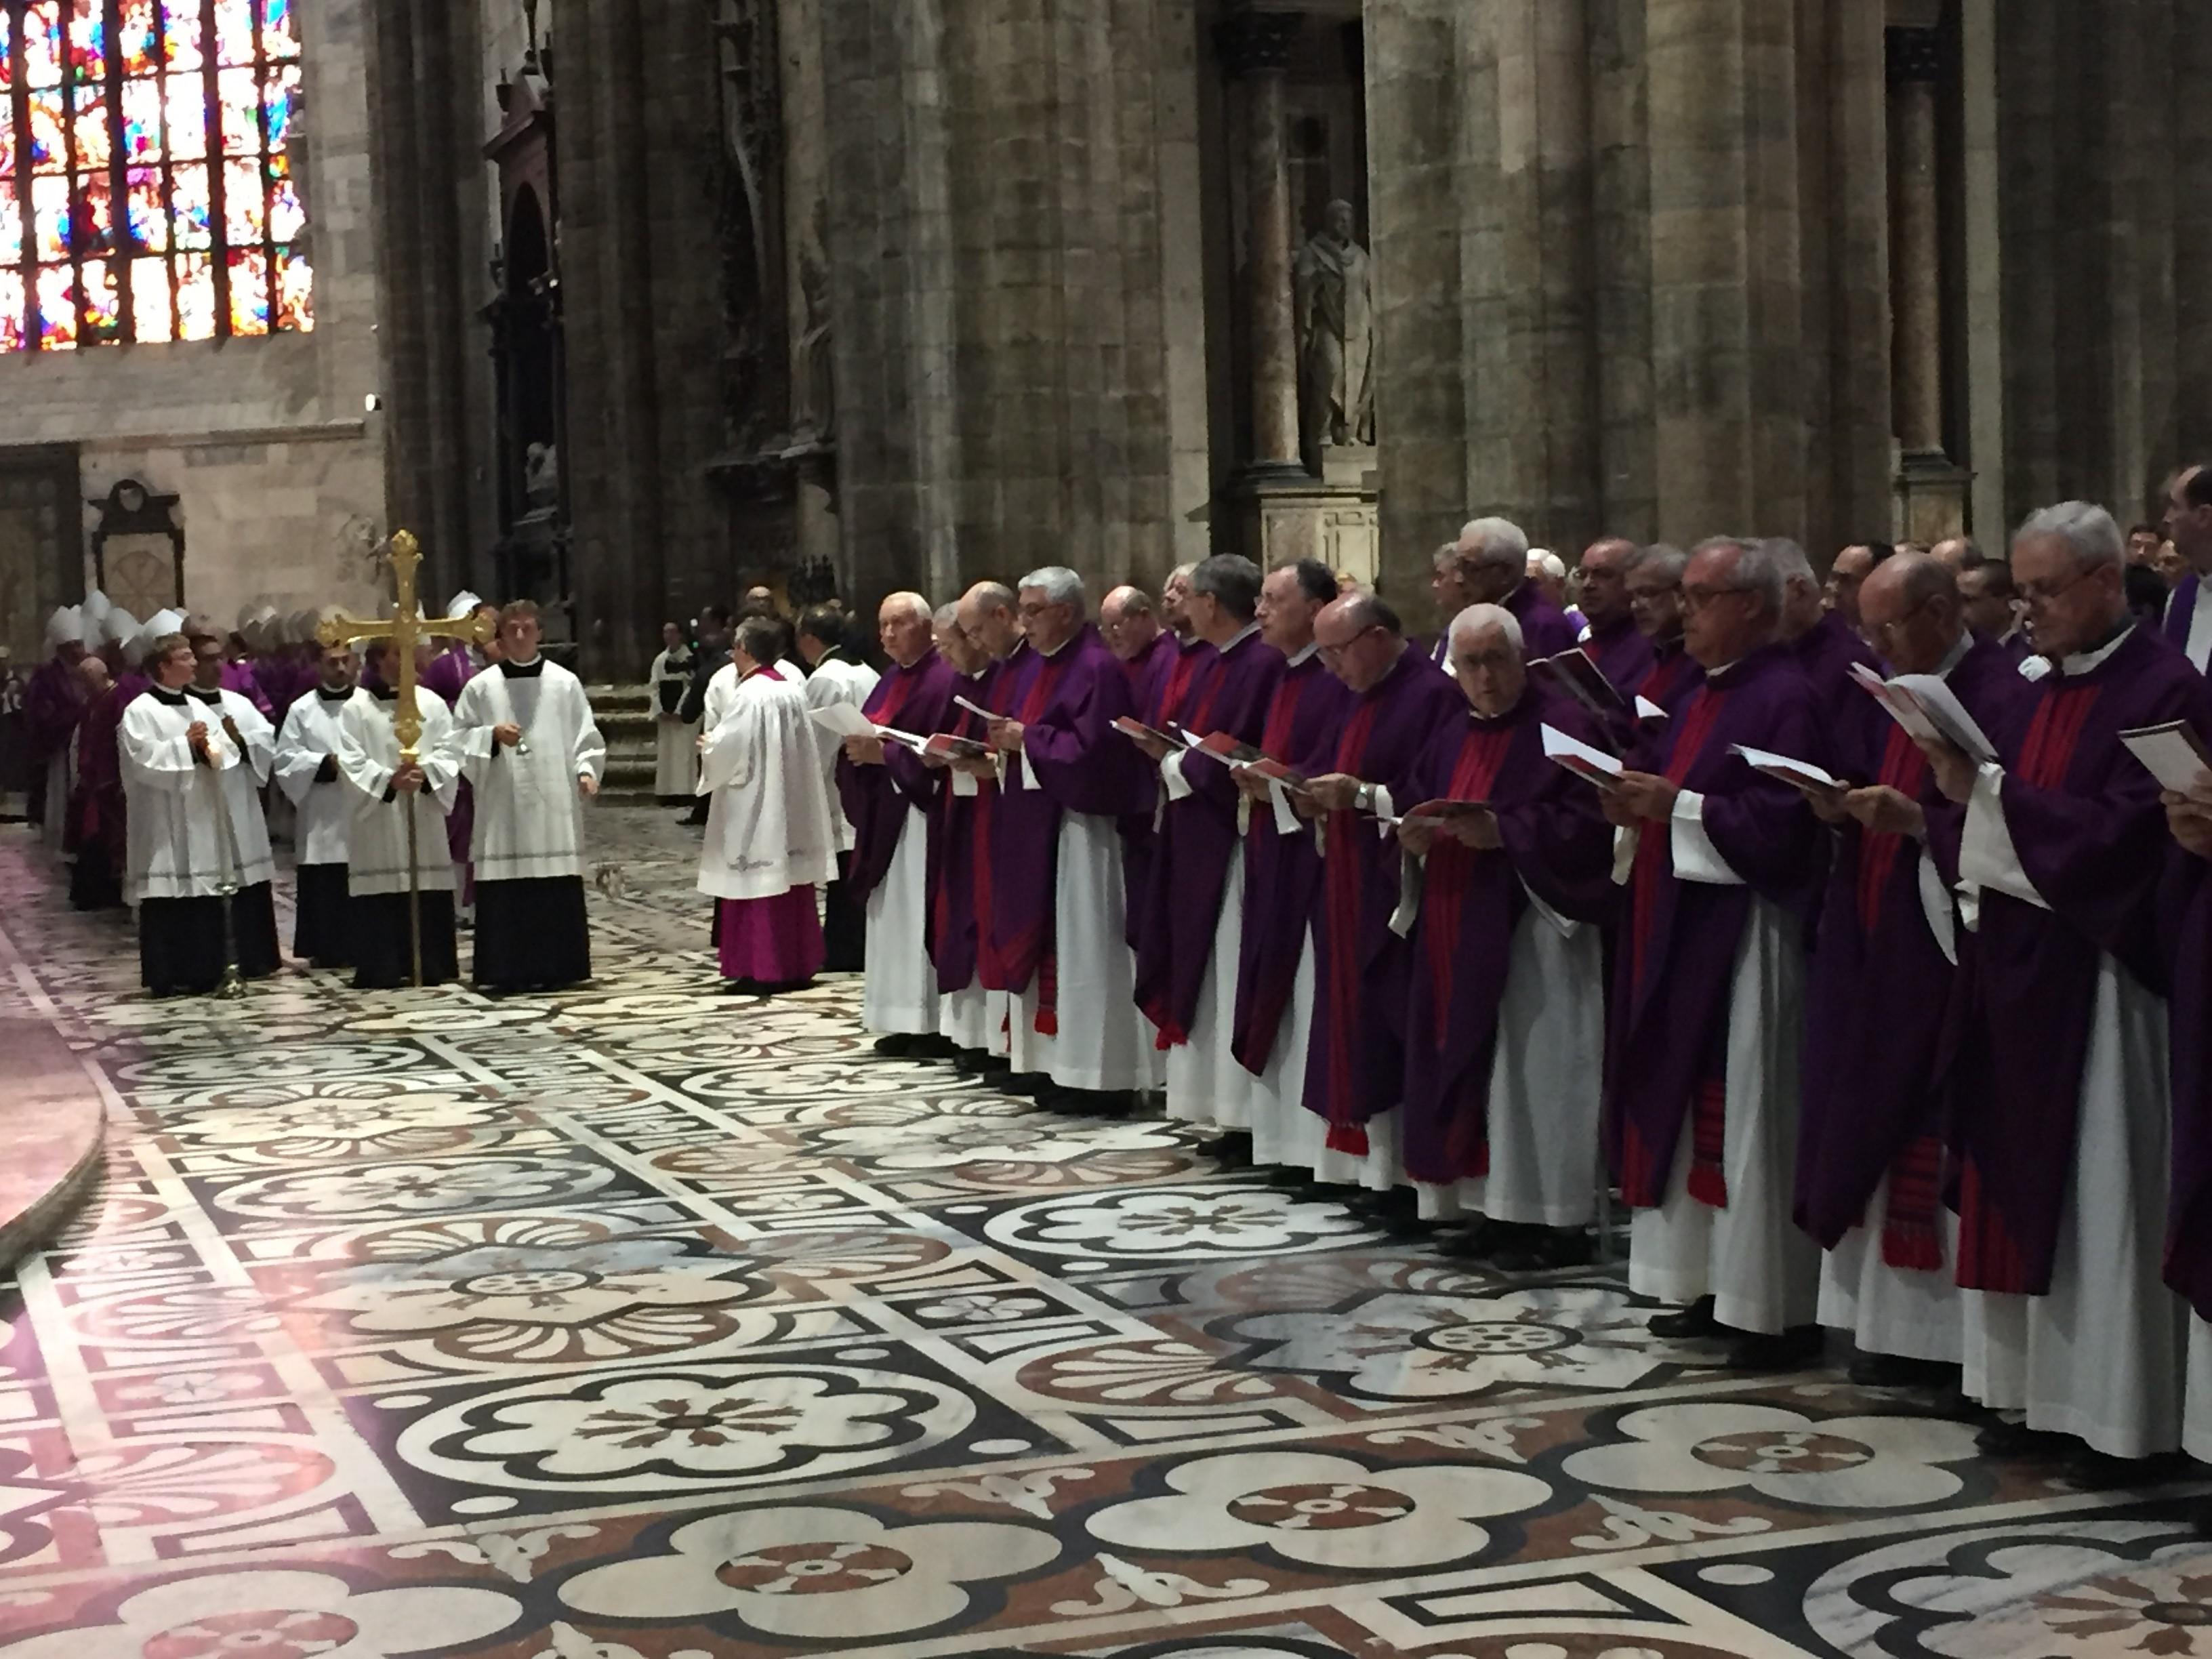 Vescovi e cardinali in preghiera all'inizio della cerimonia